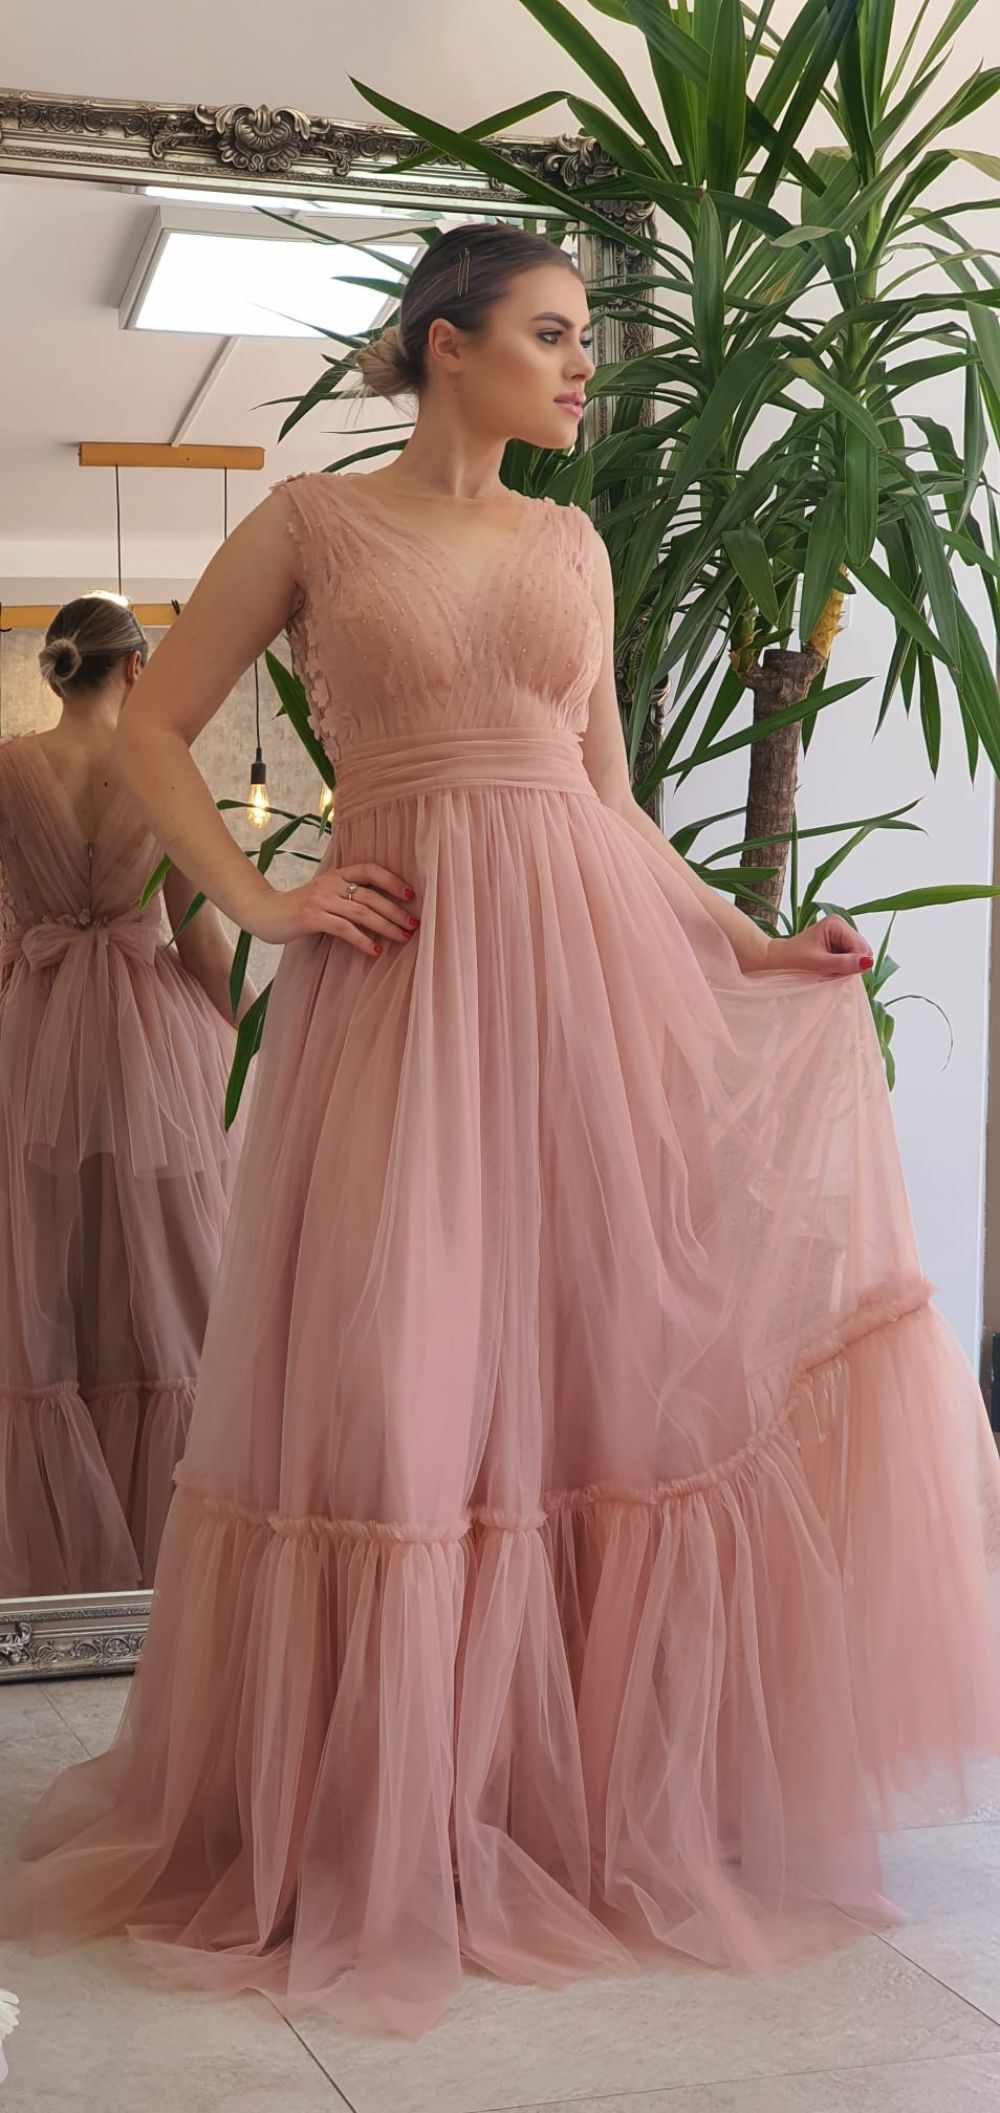 Rochie de ocazie lunga din tull roz prafuit prevazuta cu perle si flori 3D